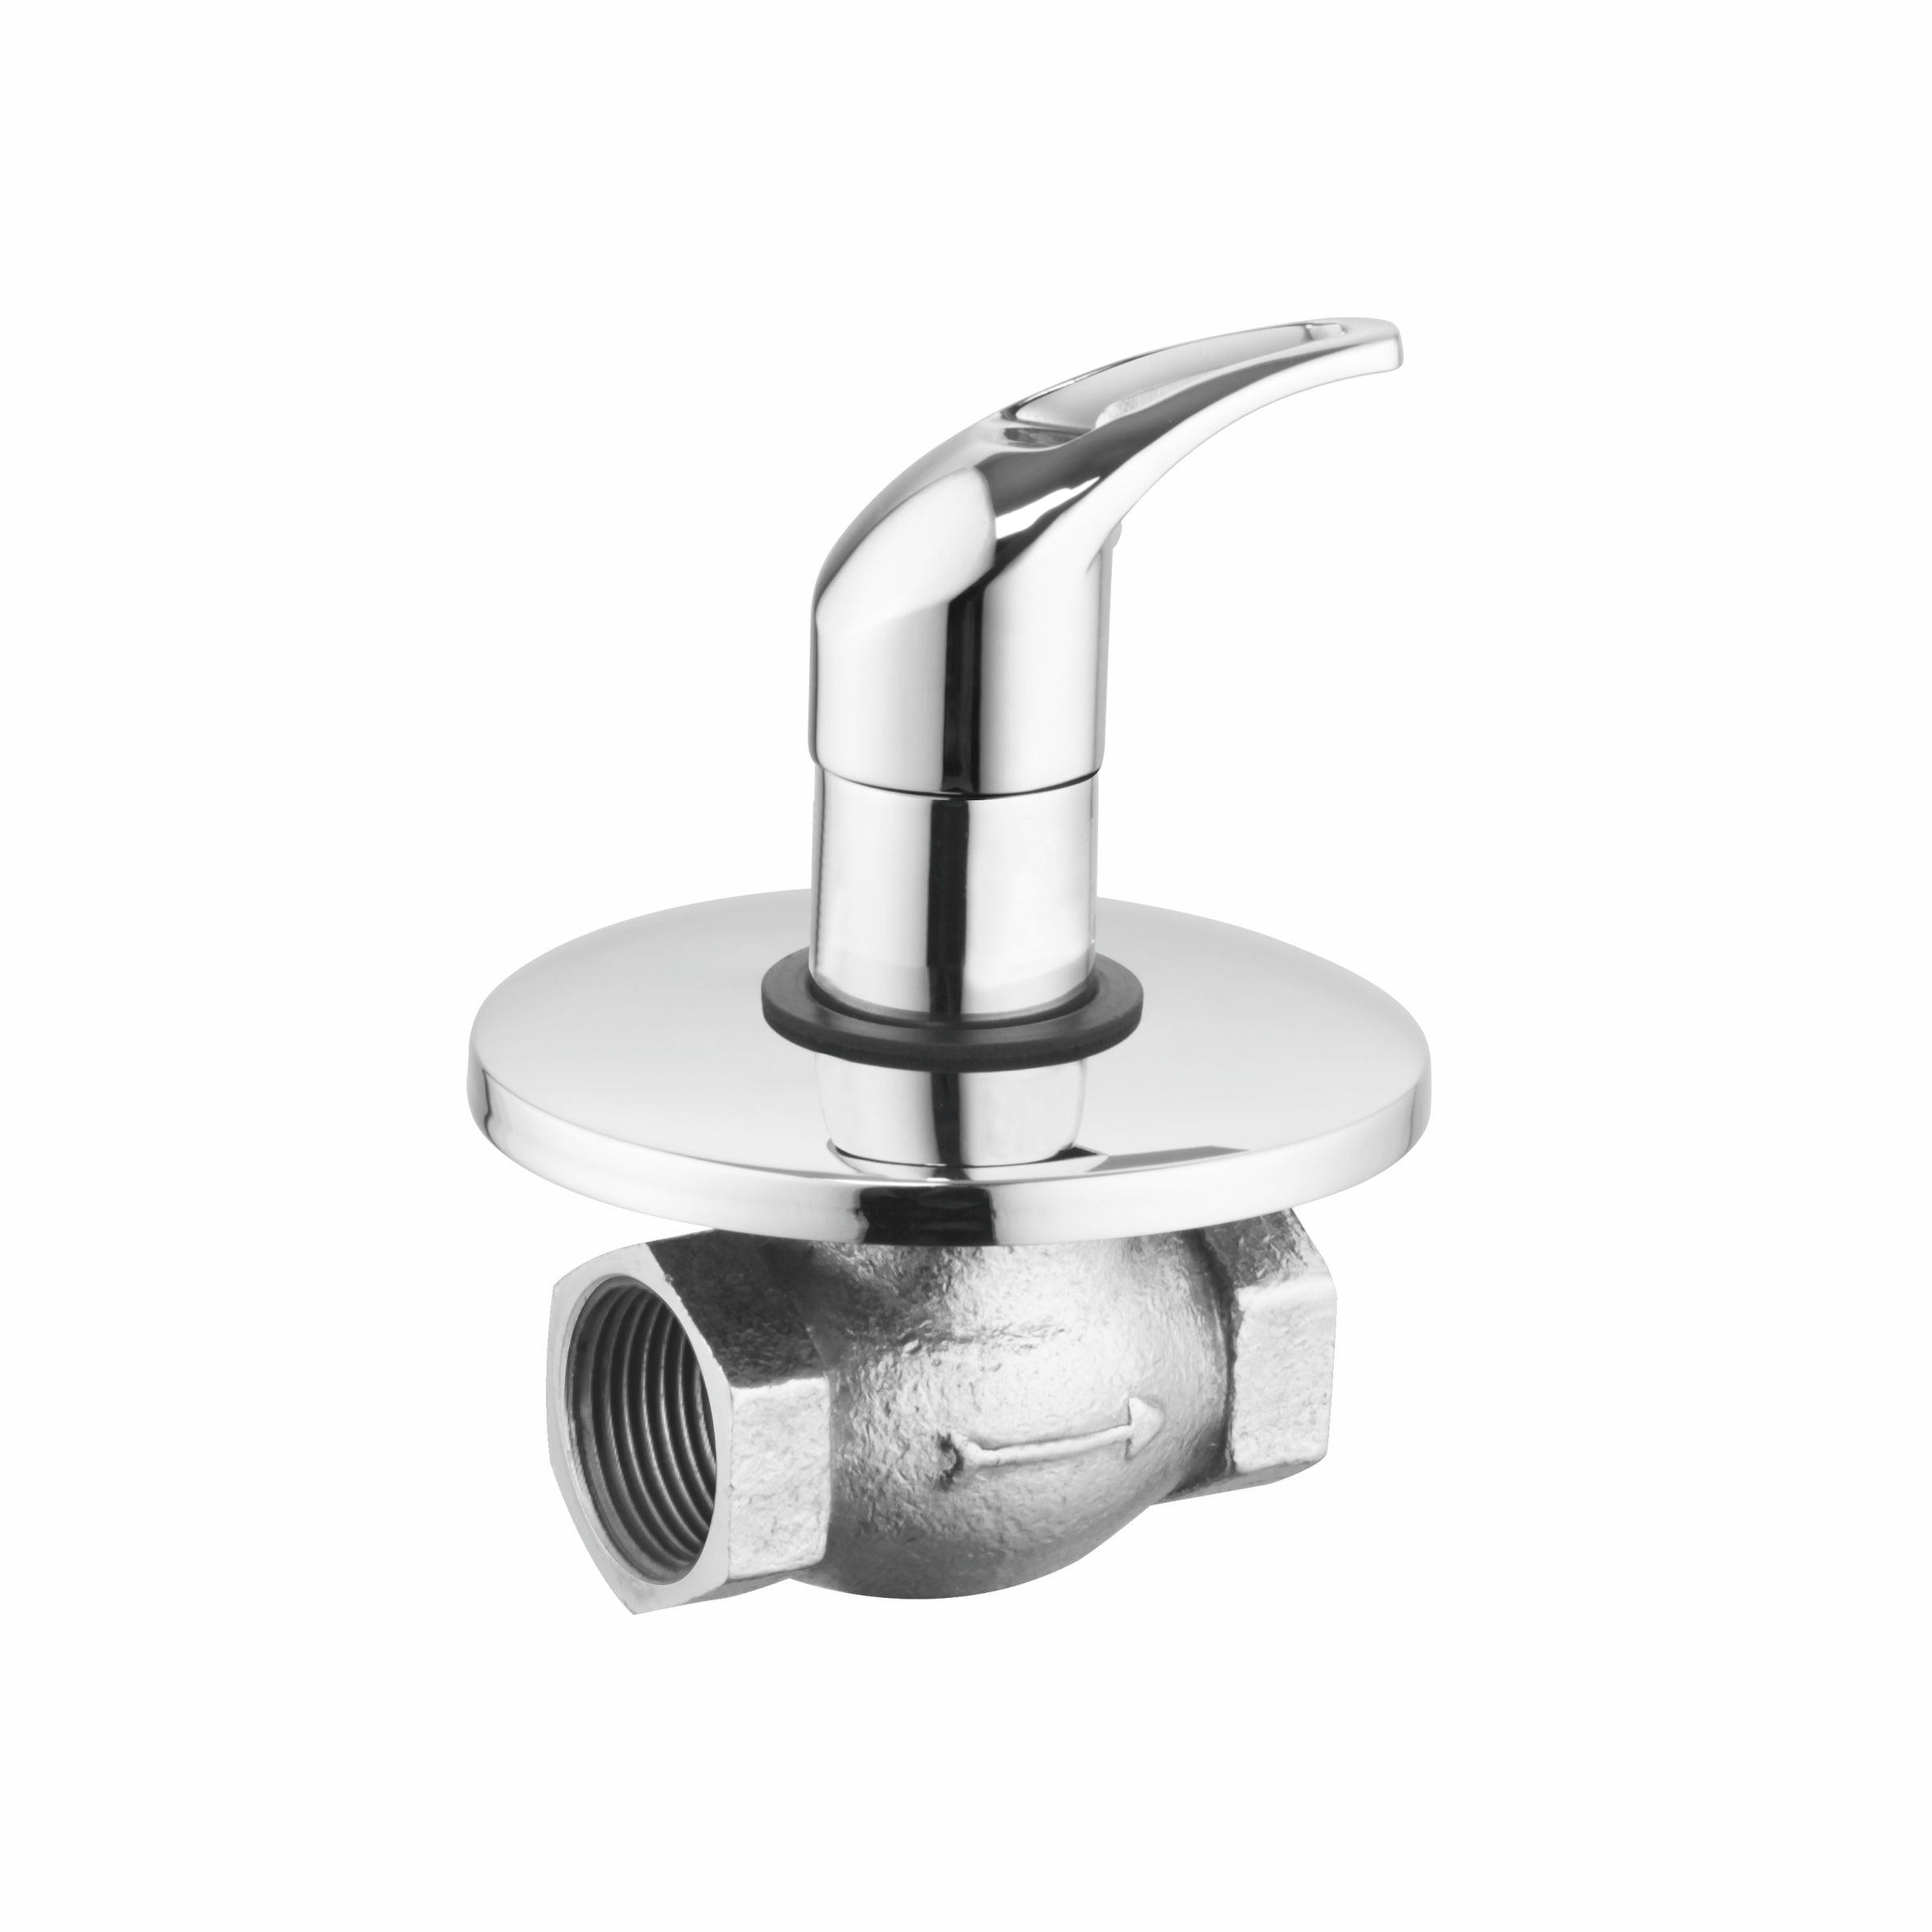 Pixel Flush Cock 25mm Brass Faucet - LIPKA - Lipka Home